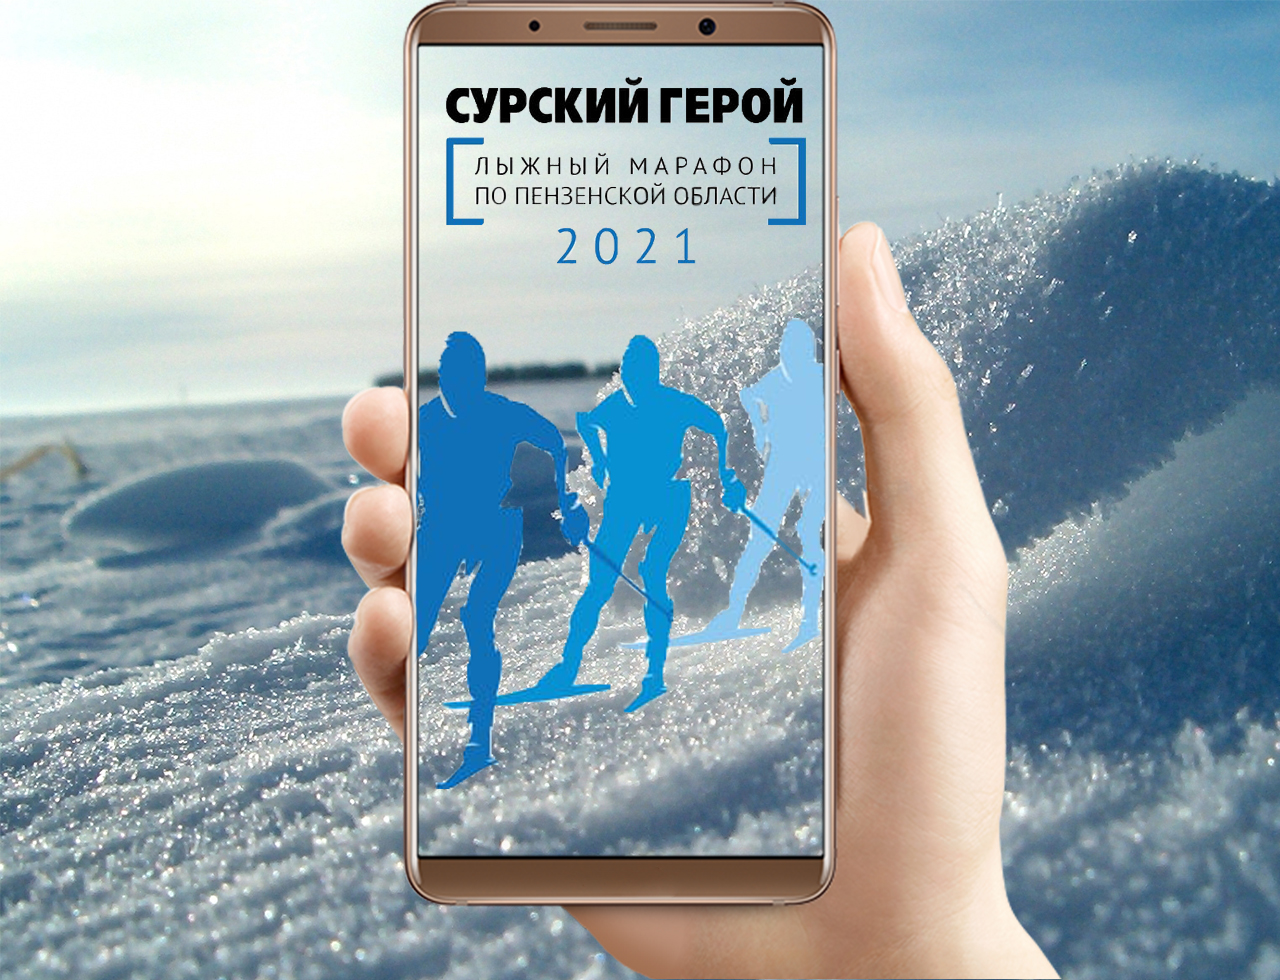 Кузнечан приглашают принять участие в лыжном онлайн-марафоне 